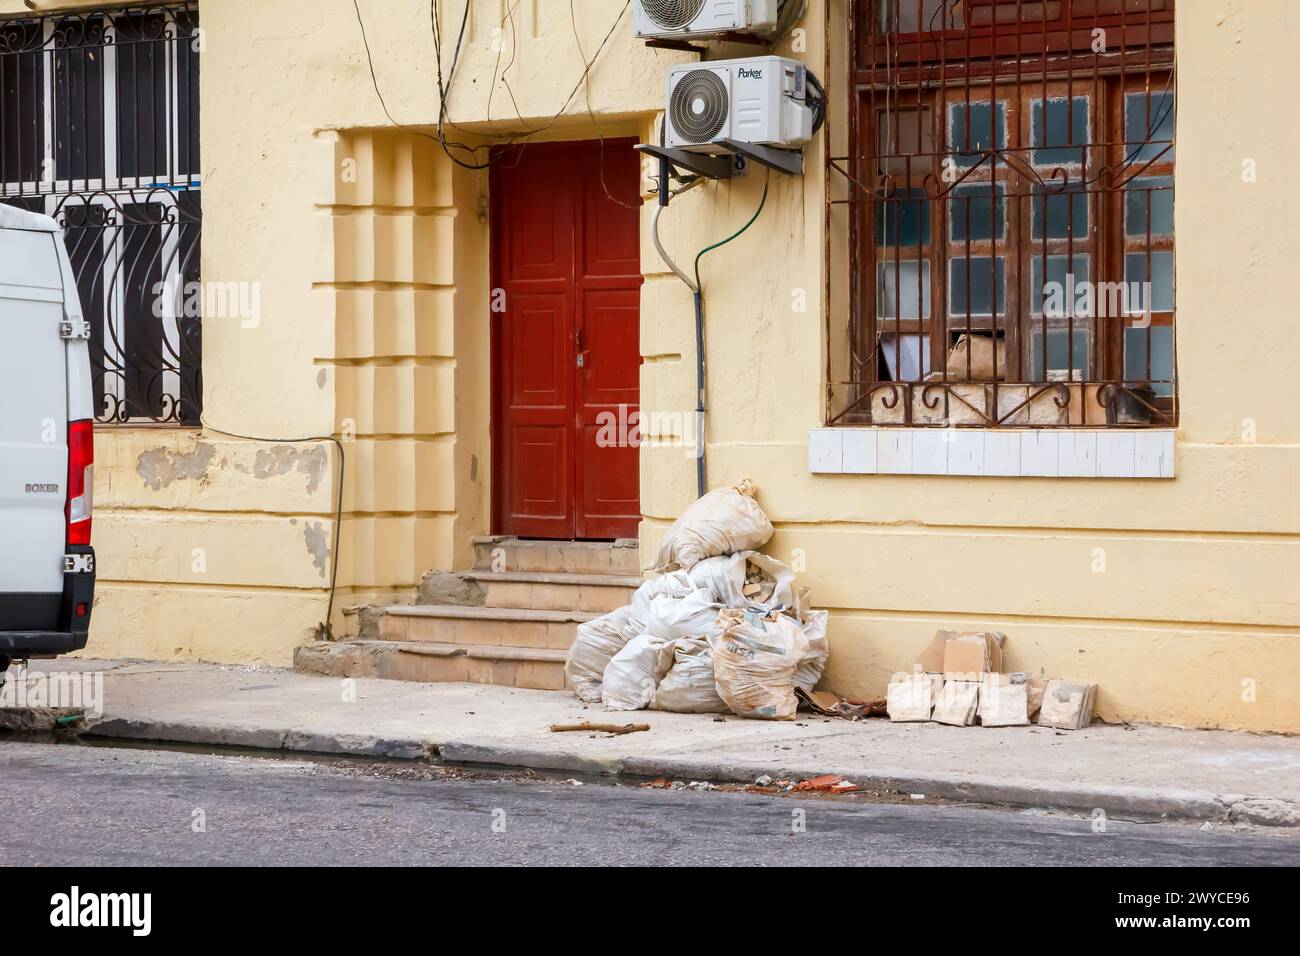 Sacks with rubble by door of building in Havana, Cuba Stock Photo